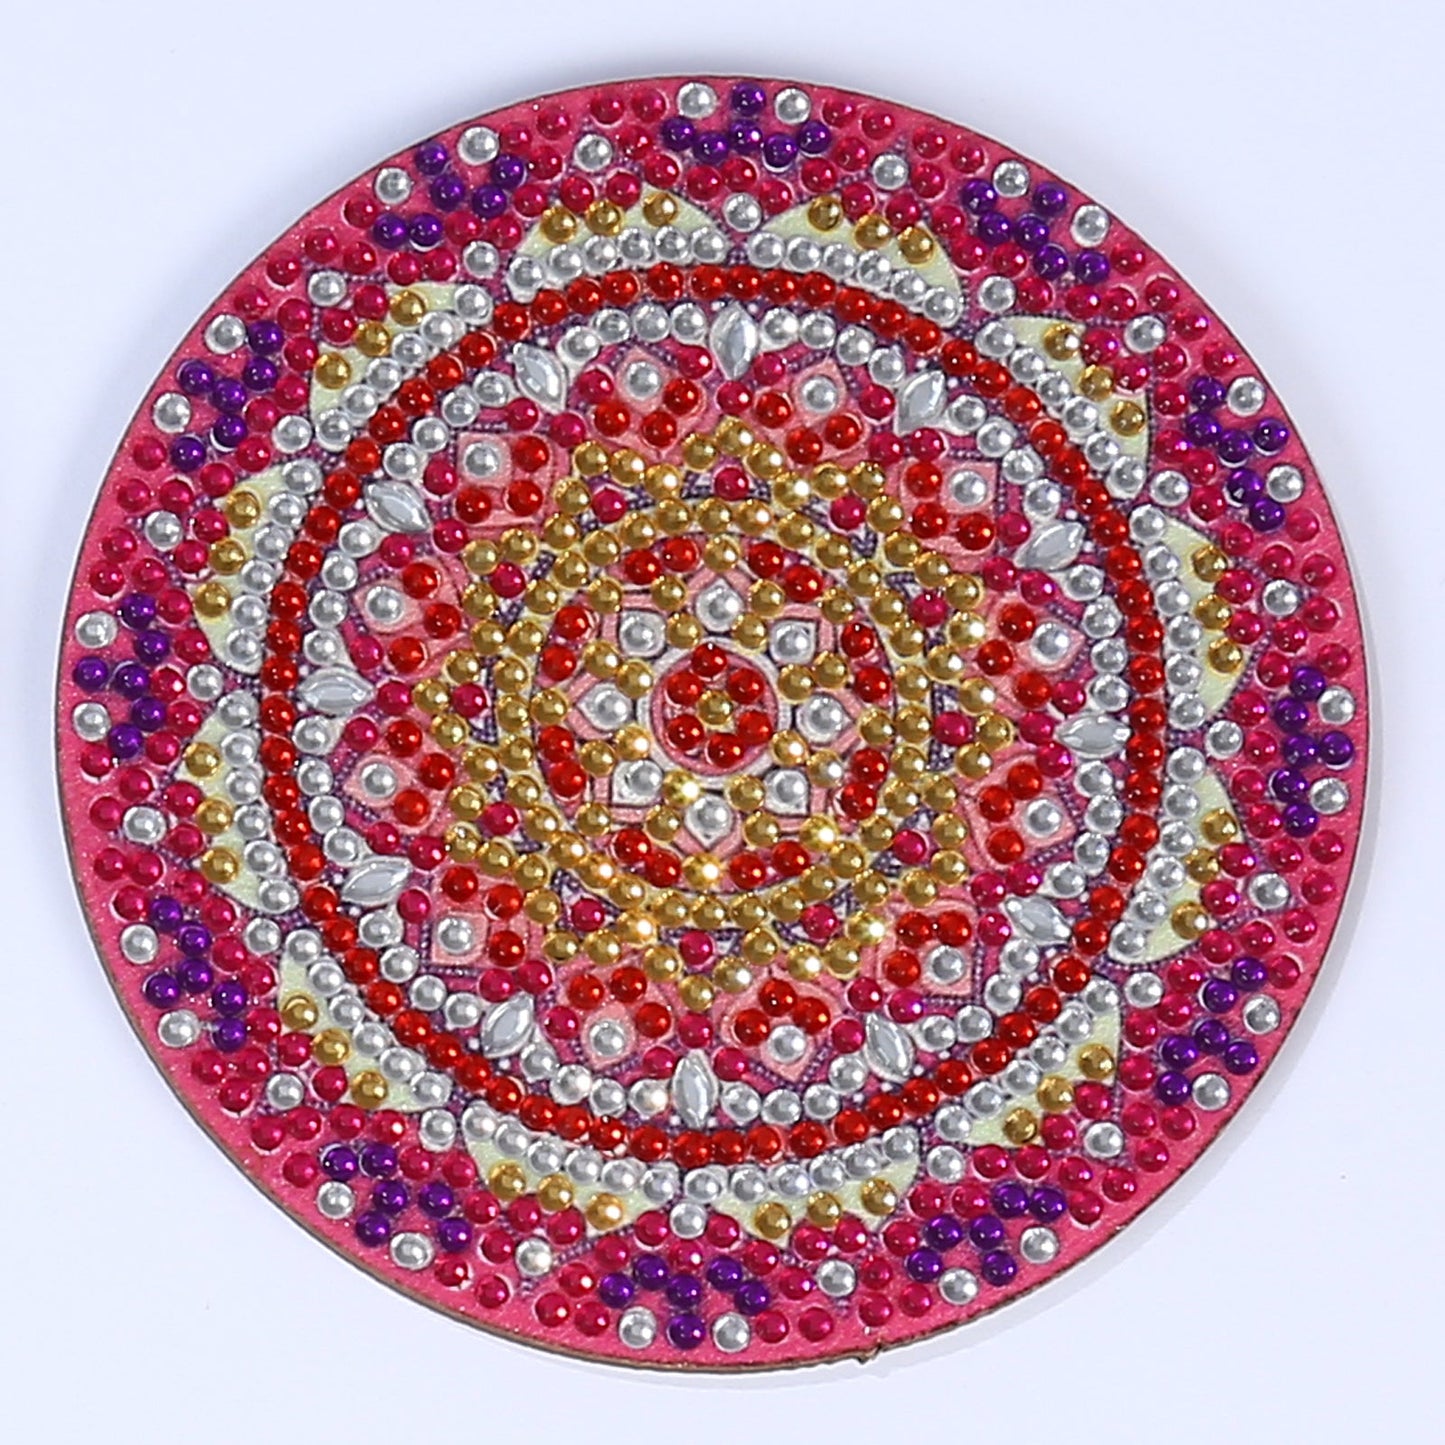 DIY Diamond Painting Coasters - Mandala Art